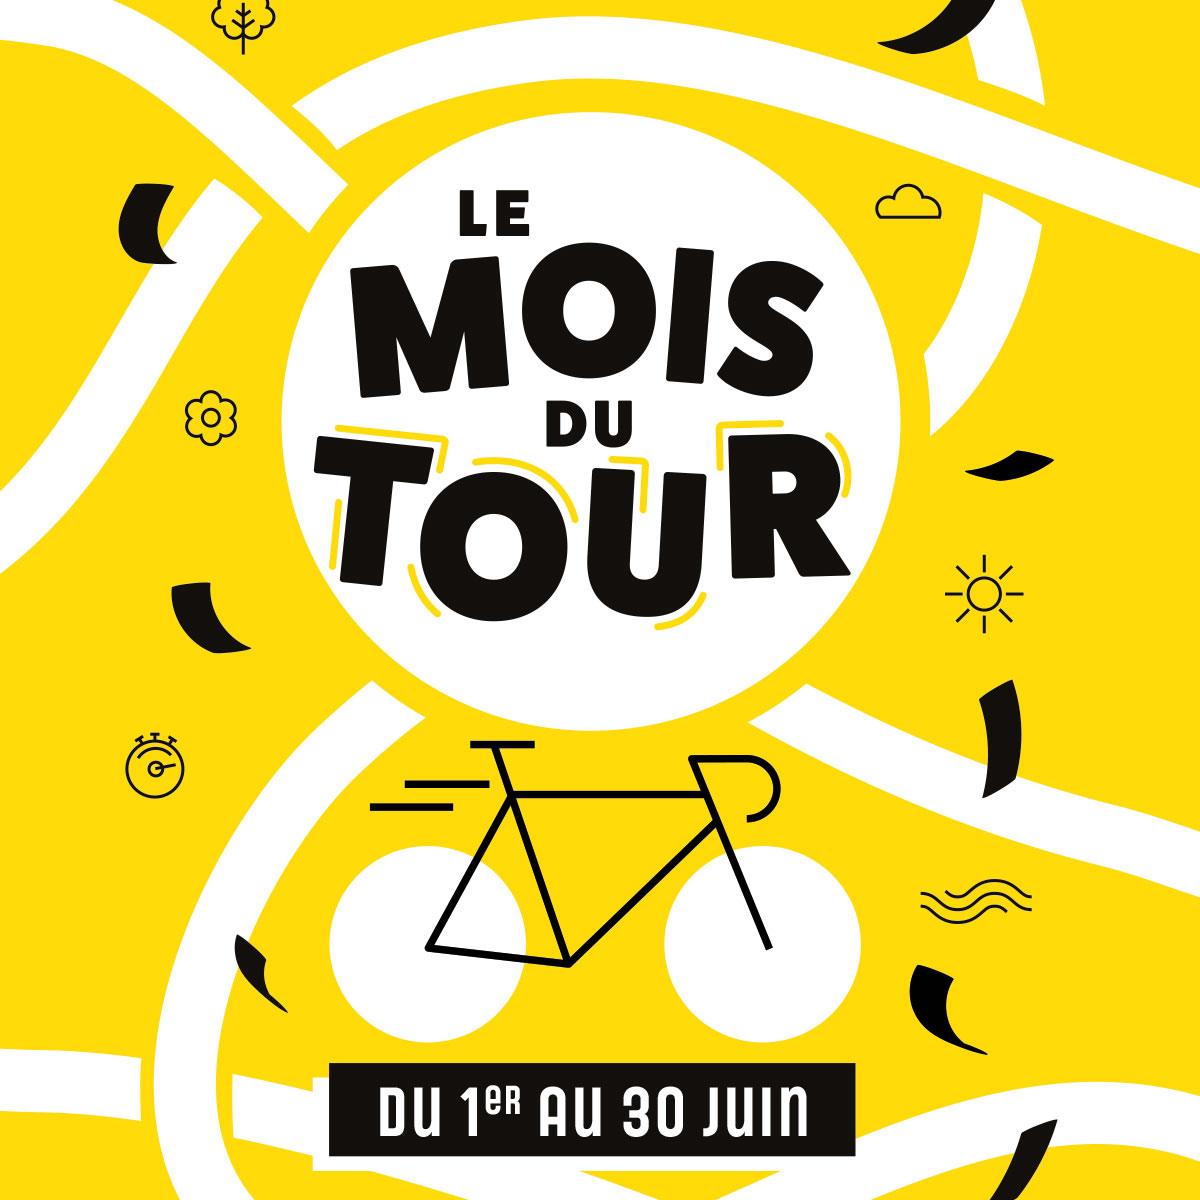 Affiche pour l'évenement "Le Mois du Tour" un évenement de Laval en rapport avec le Tour de France